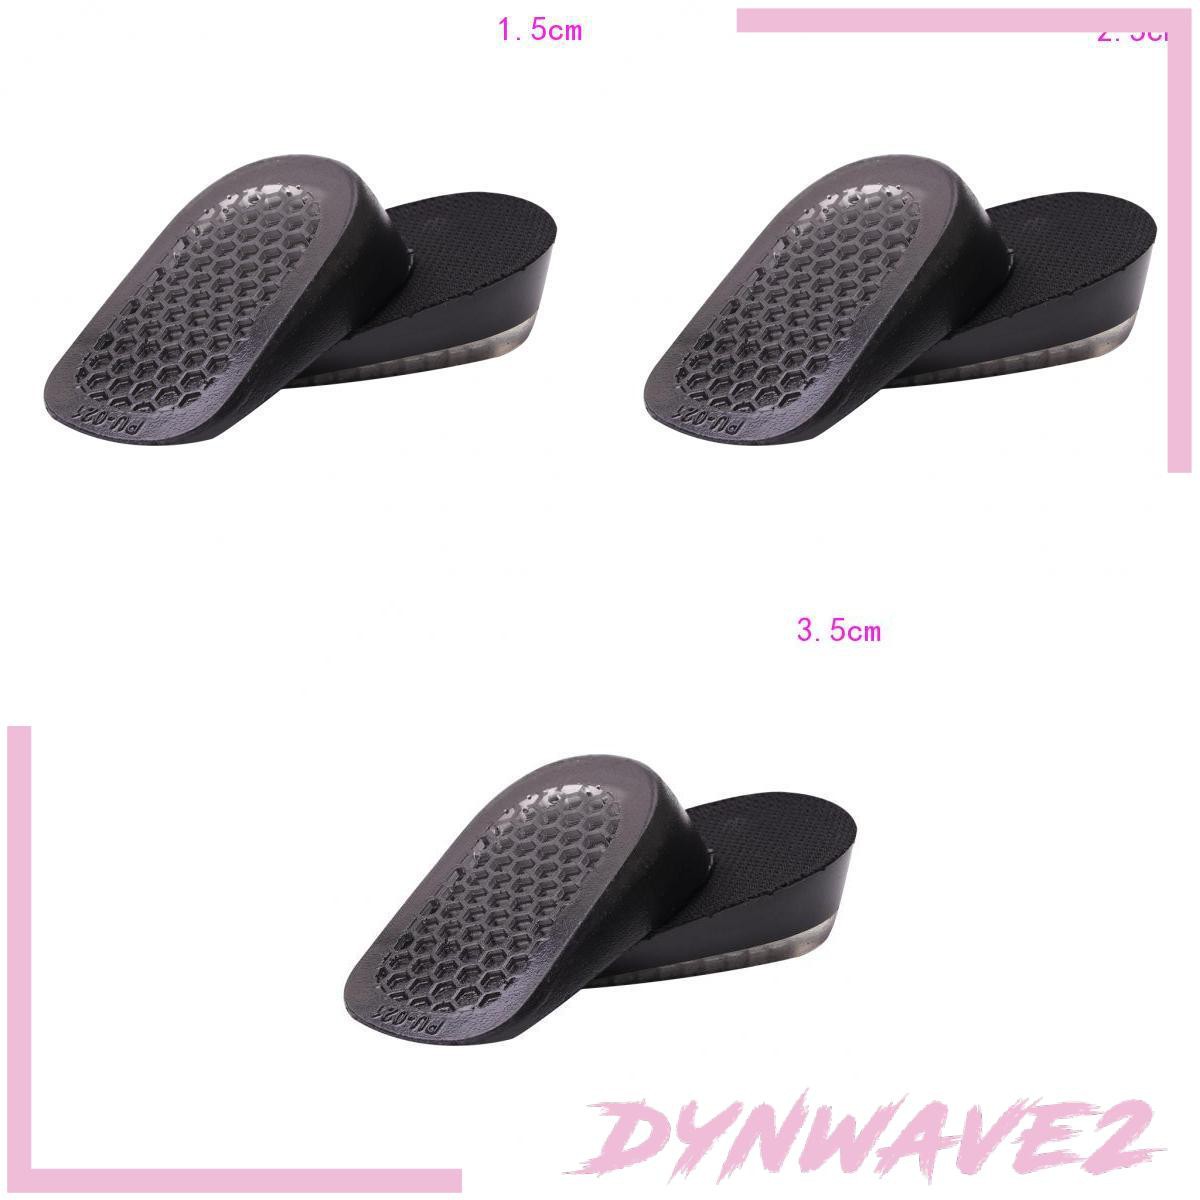 Miếng Lót Giày Tăng Chiều Cao Dynwave2 1.5cm 2. 5cm 3. 5cm